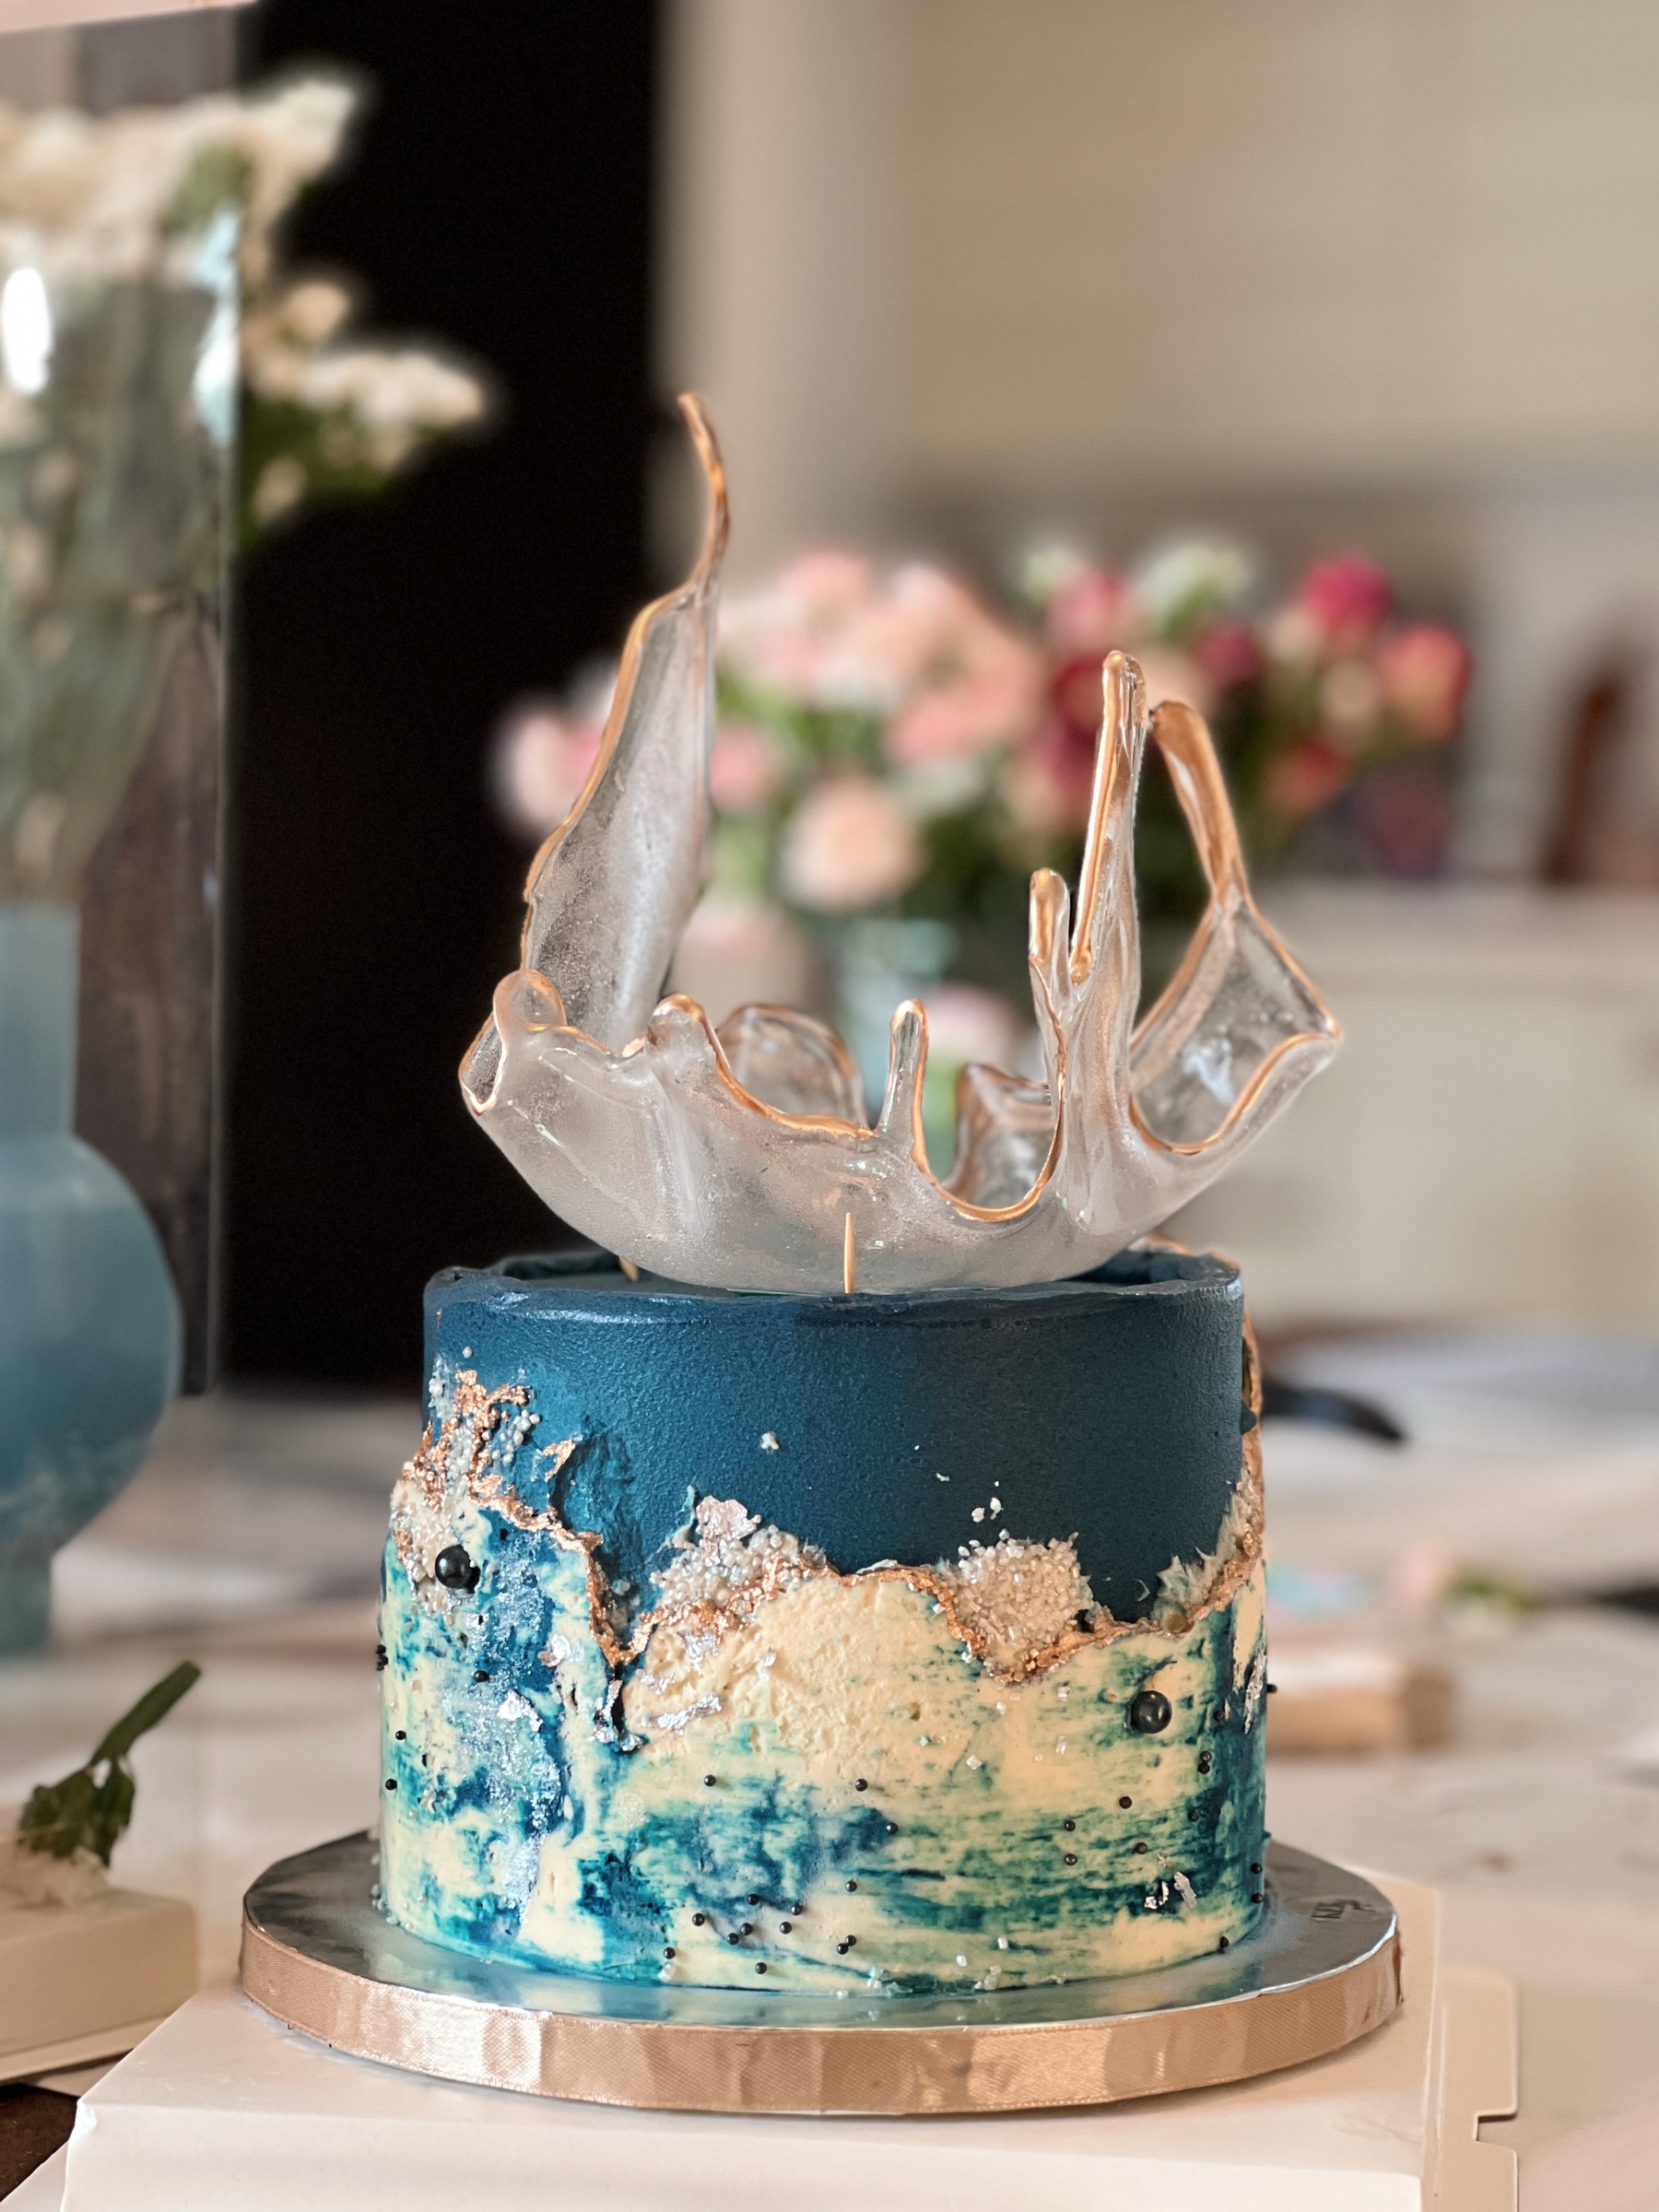 Buttercream Marble Cake Tutorial | Isomalt Bowl | Cake Decorating Tutorial  - YouTube